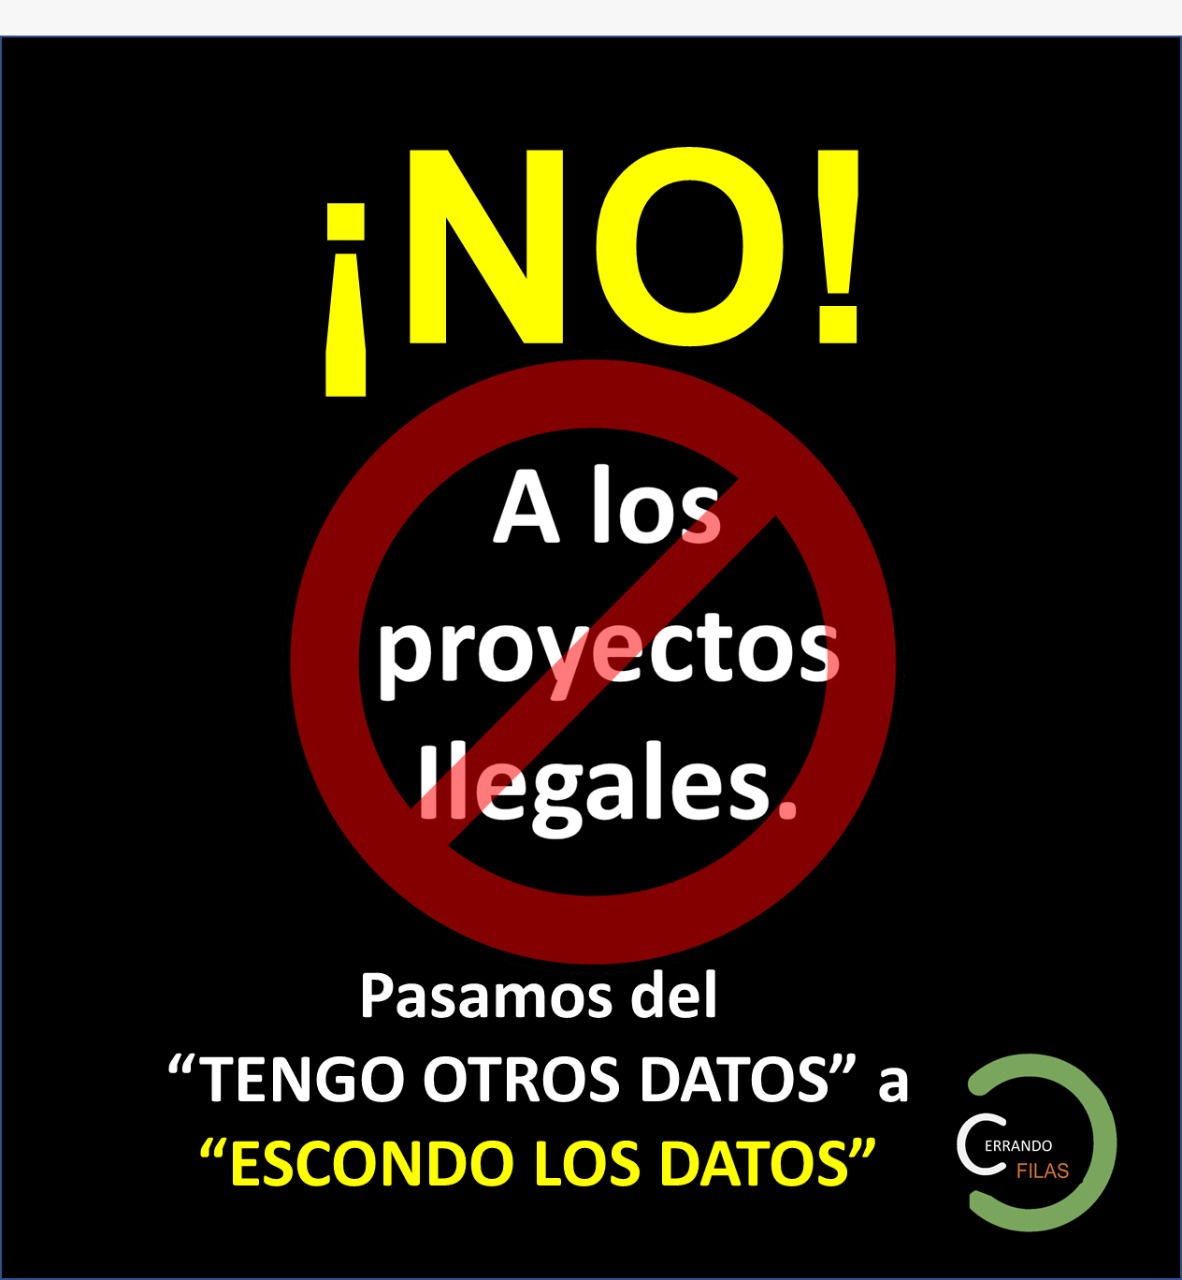 ¡No! A los proyectos ilegales